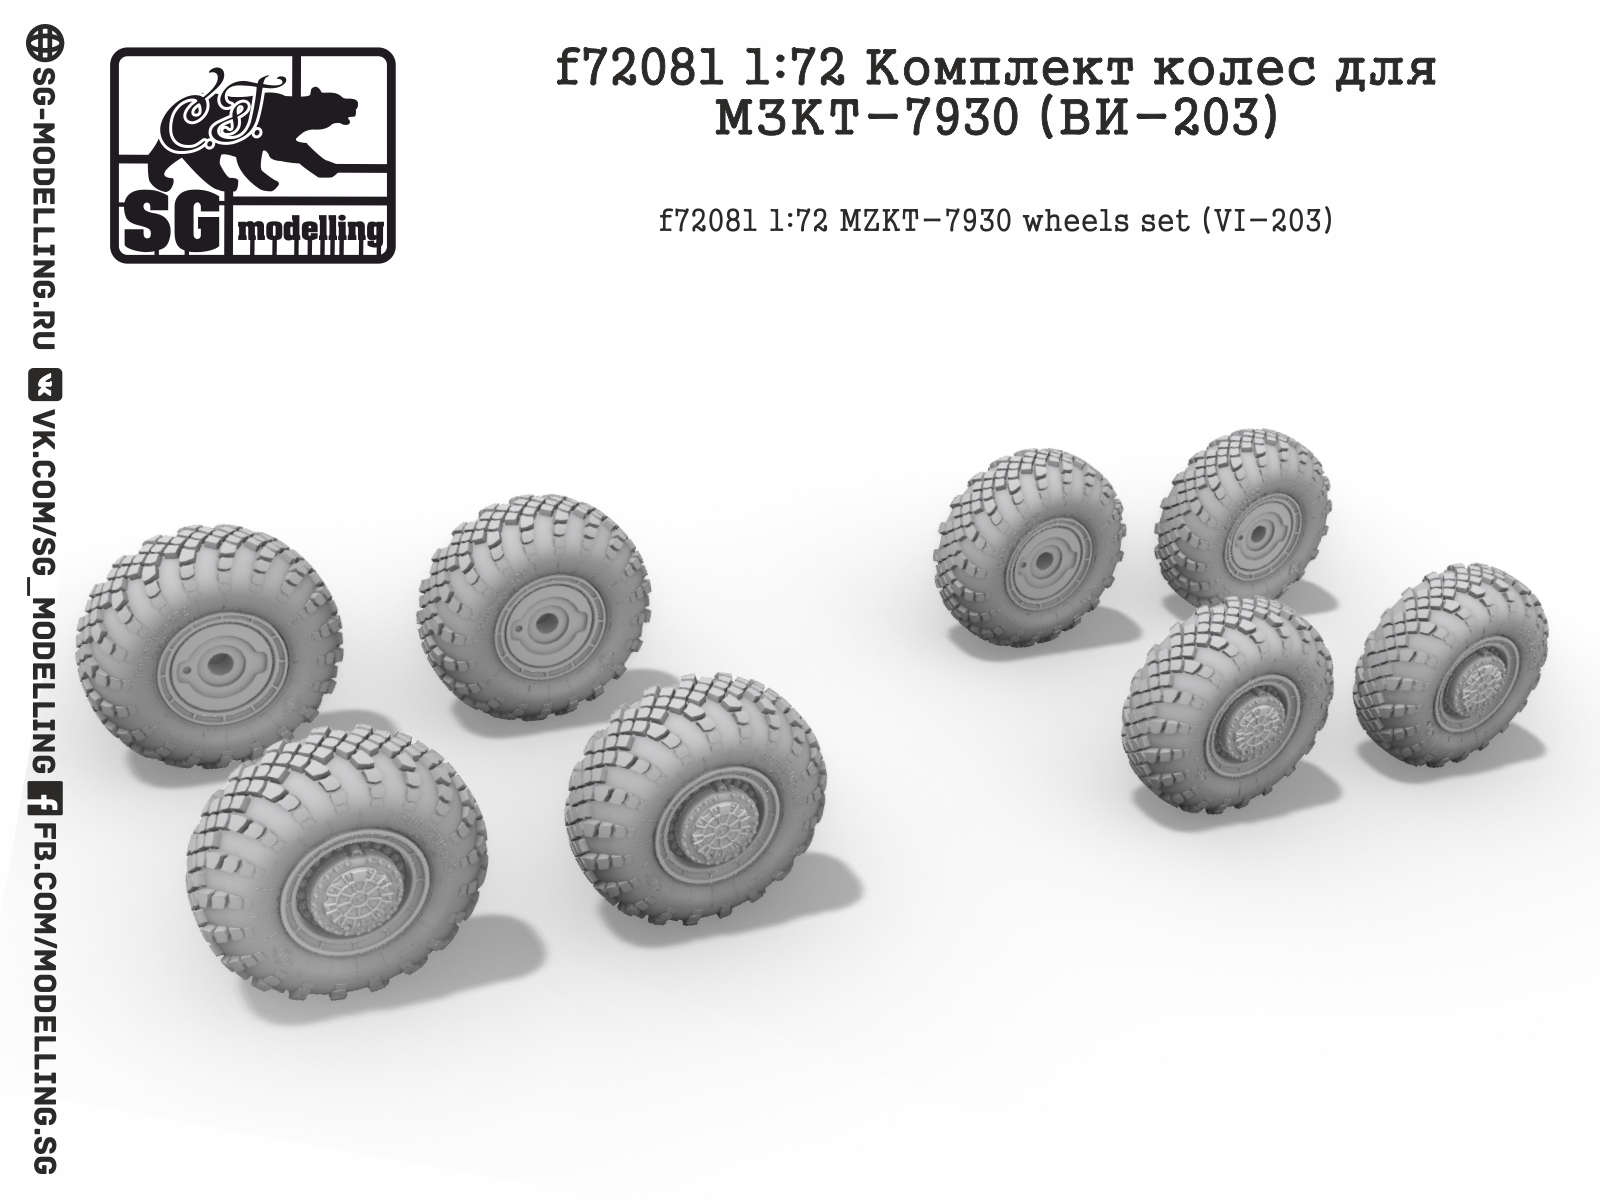 f72081  дополнения из смолы  Комплект колёс для МЗКТ-7930 (ВИ-203)  (1:72)